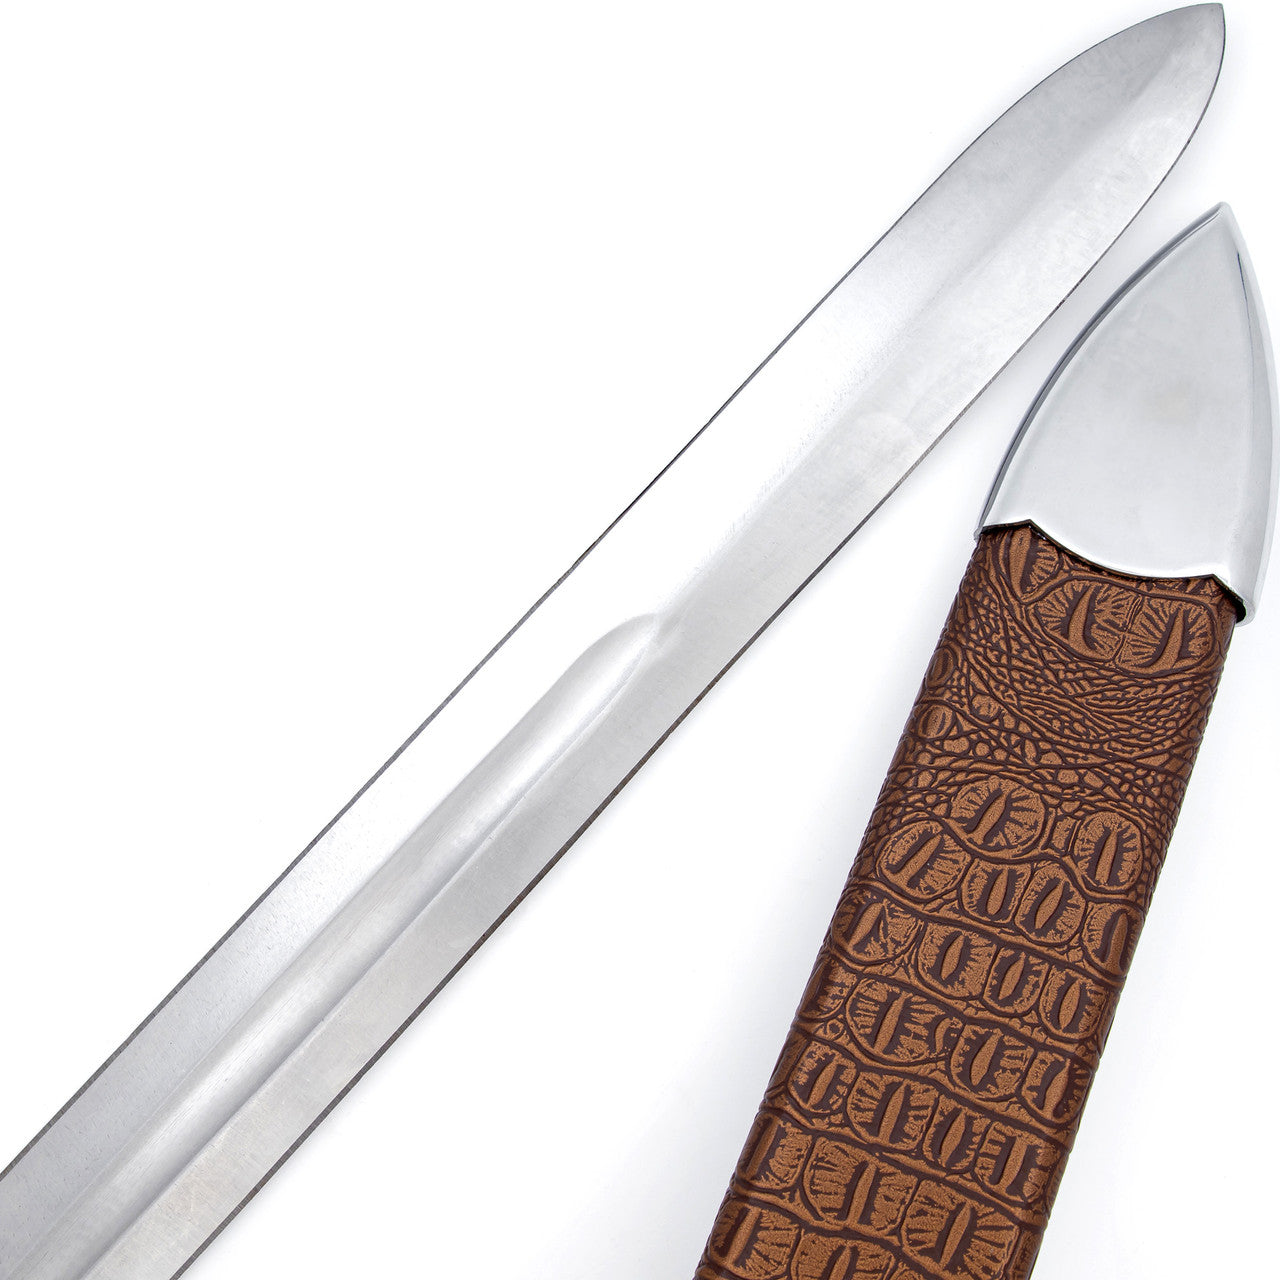 Ringing Metal 1095 High Carbon Steel Medieval Sword-3